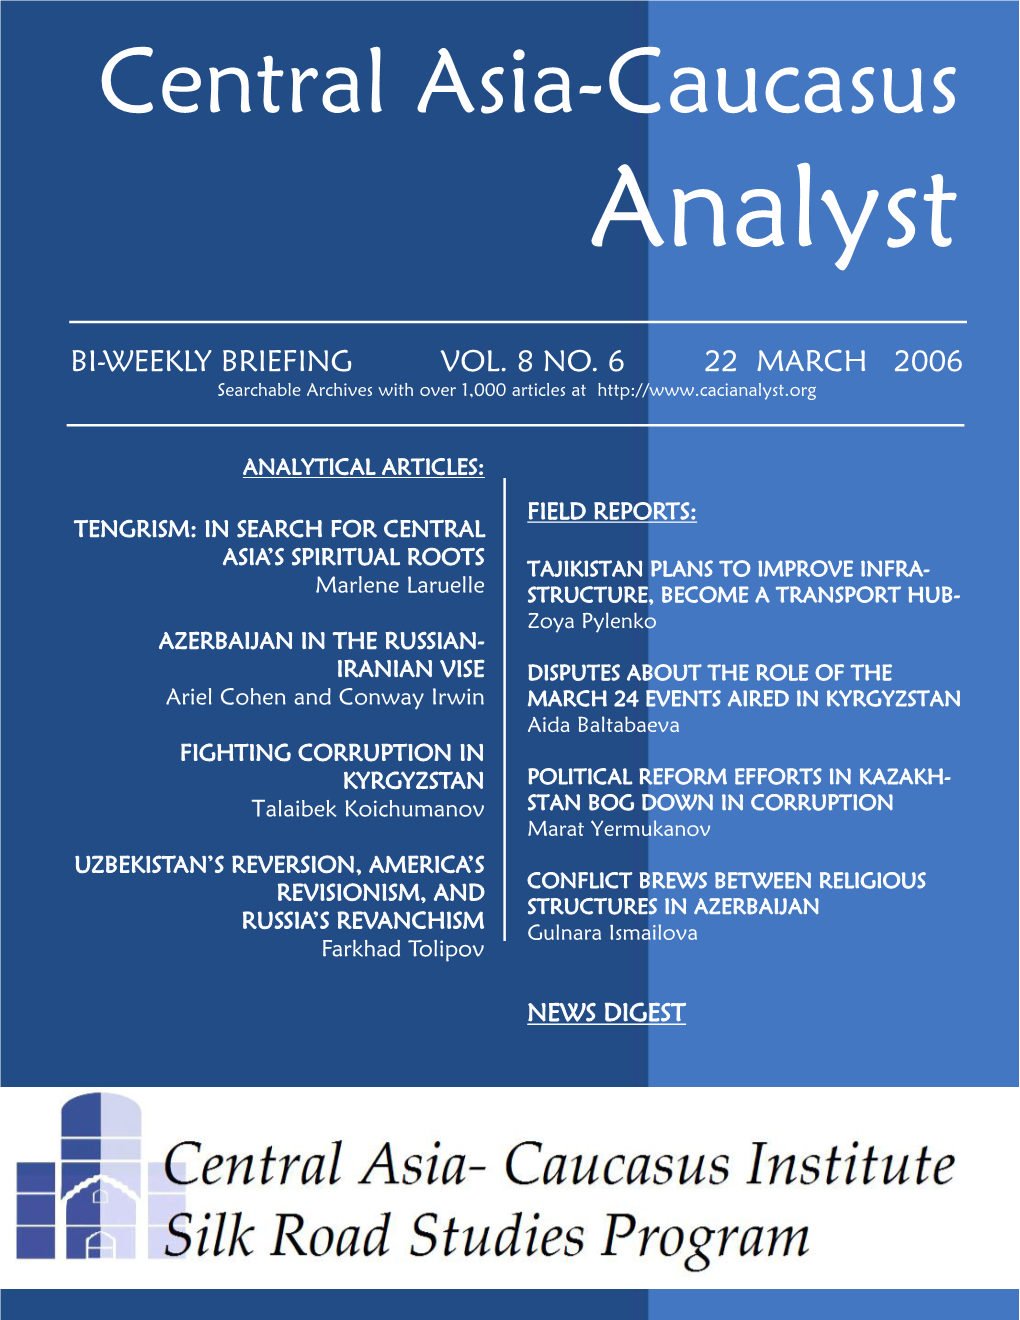 Central Asia-Caucasus Analyst Vol 8, No 6